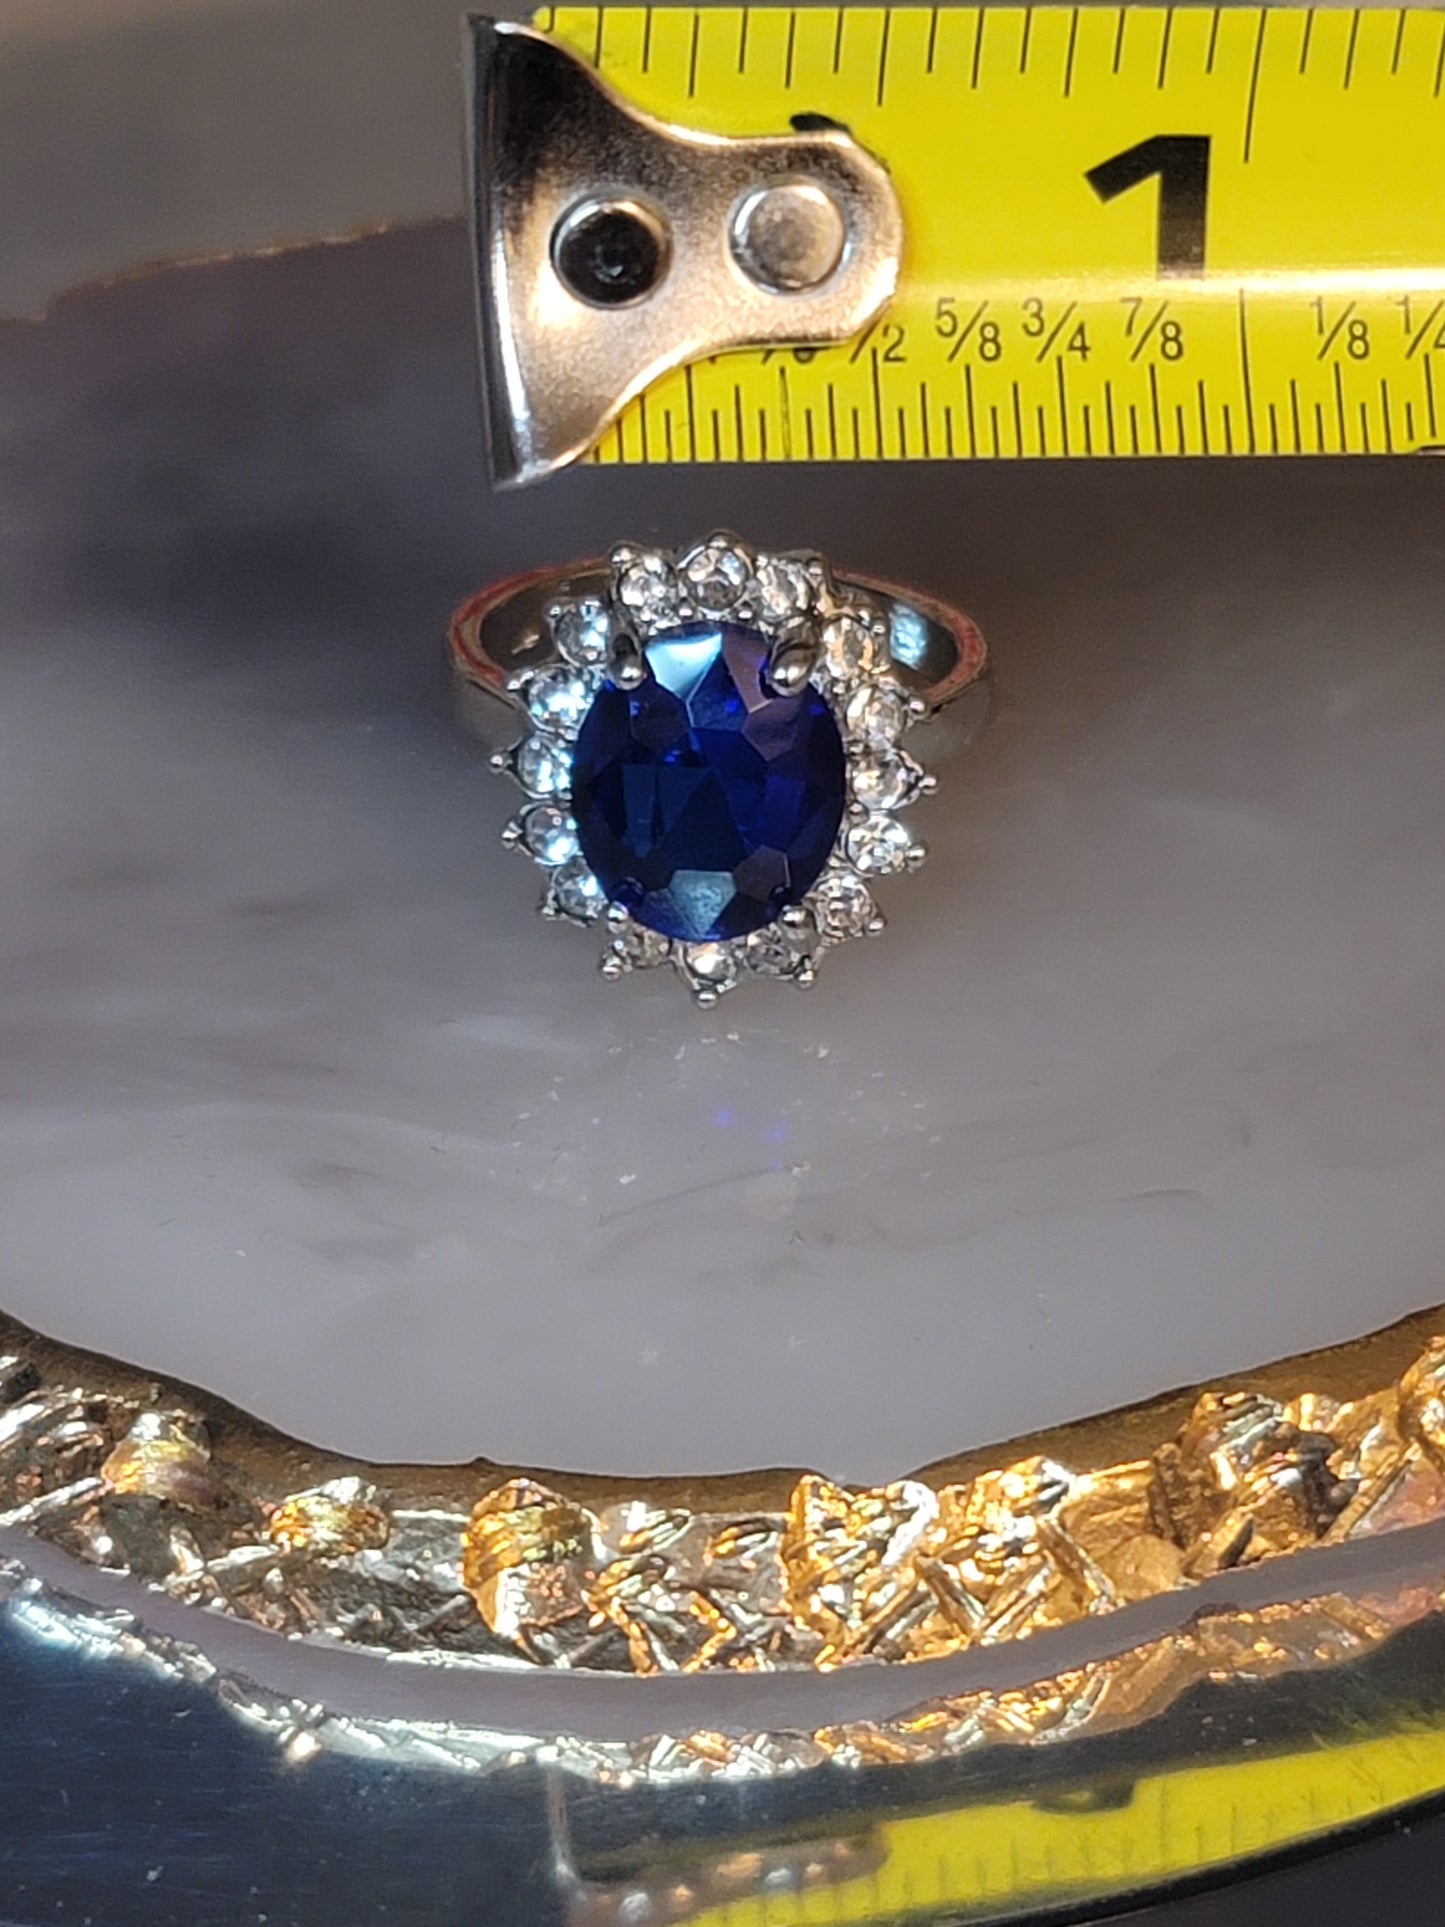 Blue rhinestone silver ring size 8 1/2